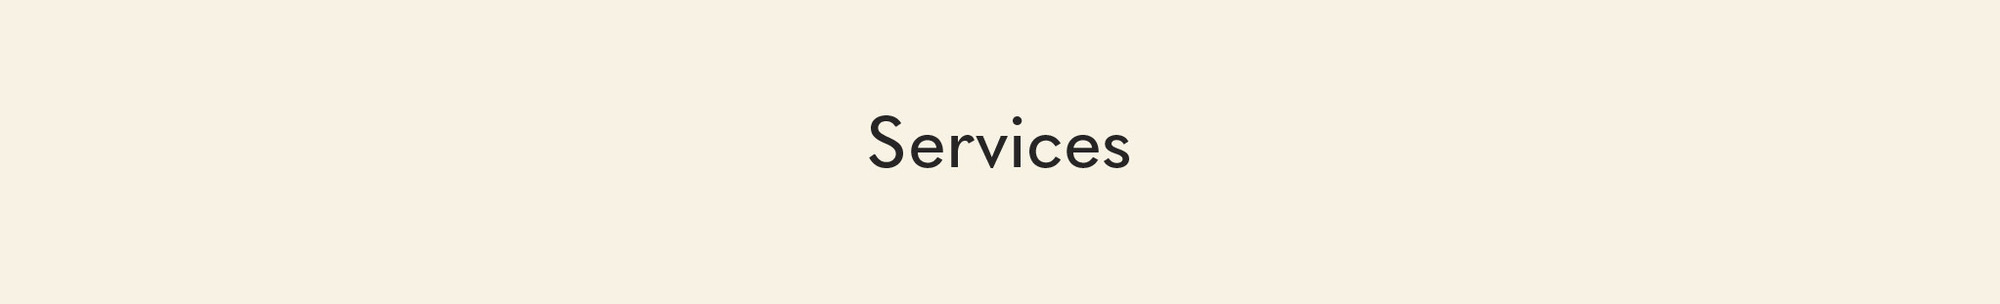 Services Header